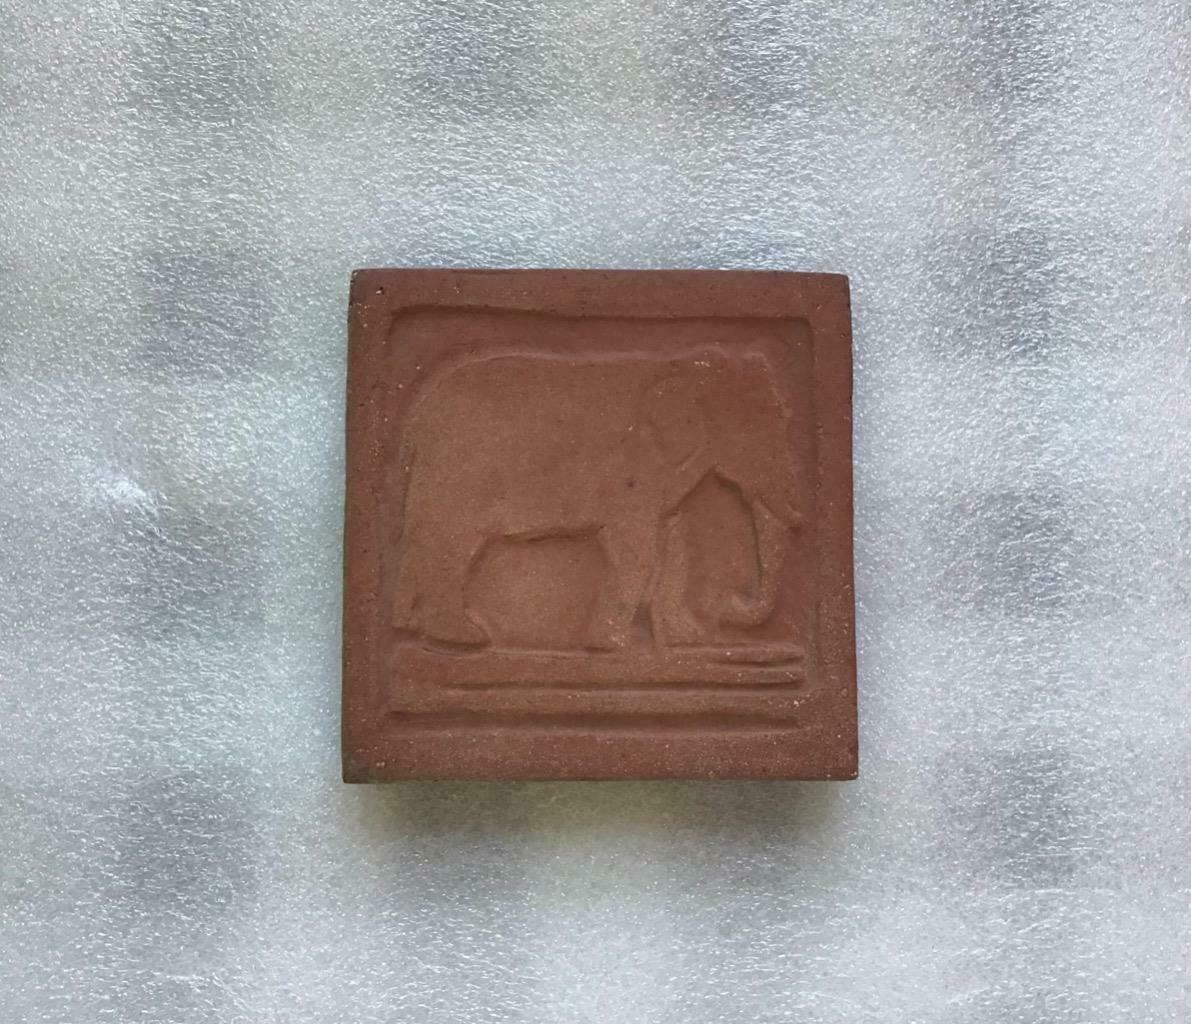 Vintage Arts & Crafts Mission Grueby Pottery Elephant Tile, Unglazed, 4x4x5/8”